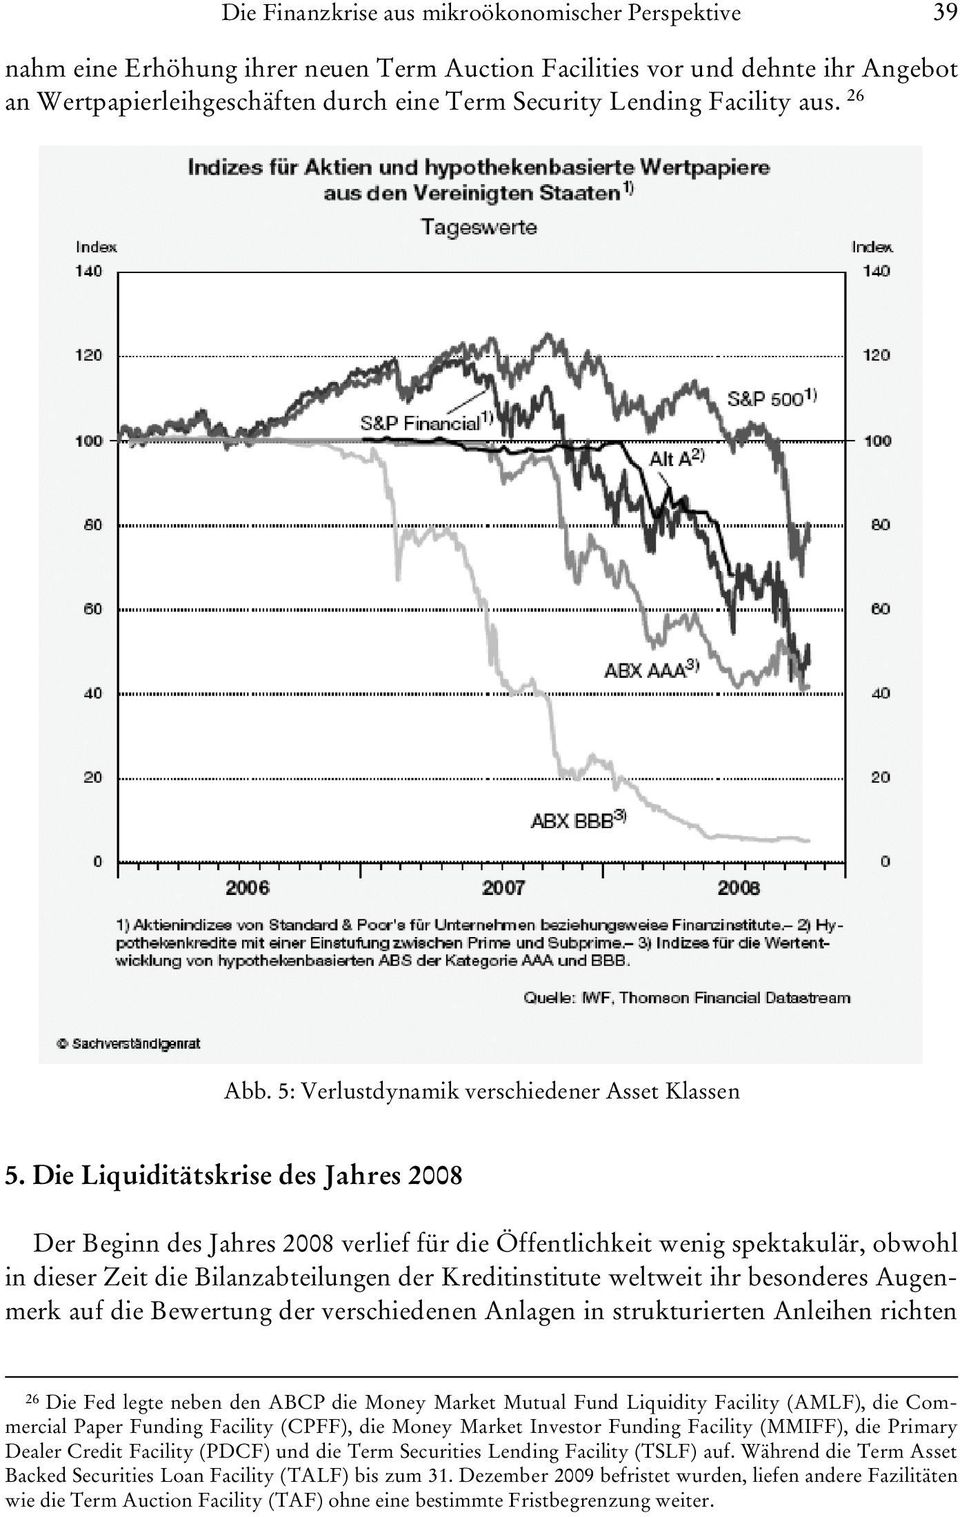 Die Liquiditätskrise des Jahres 2008 Der Beginn des Jahres 2008 verlief für die Öffentlichkeit wenig spektakulär, obwohl in dieser Zeit die Bilanzabteilungen der Kreditinstitute weltweit ihr